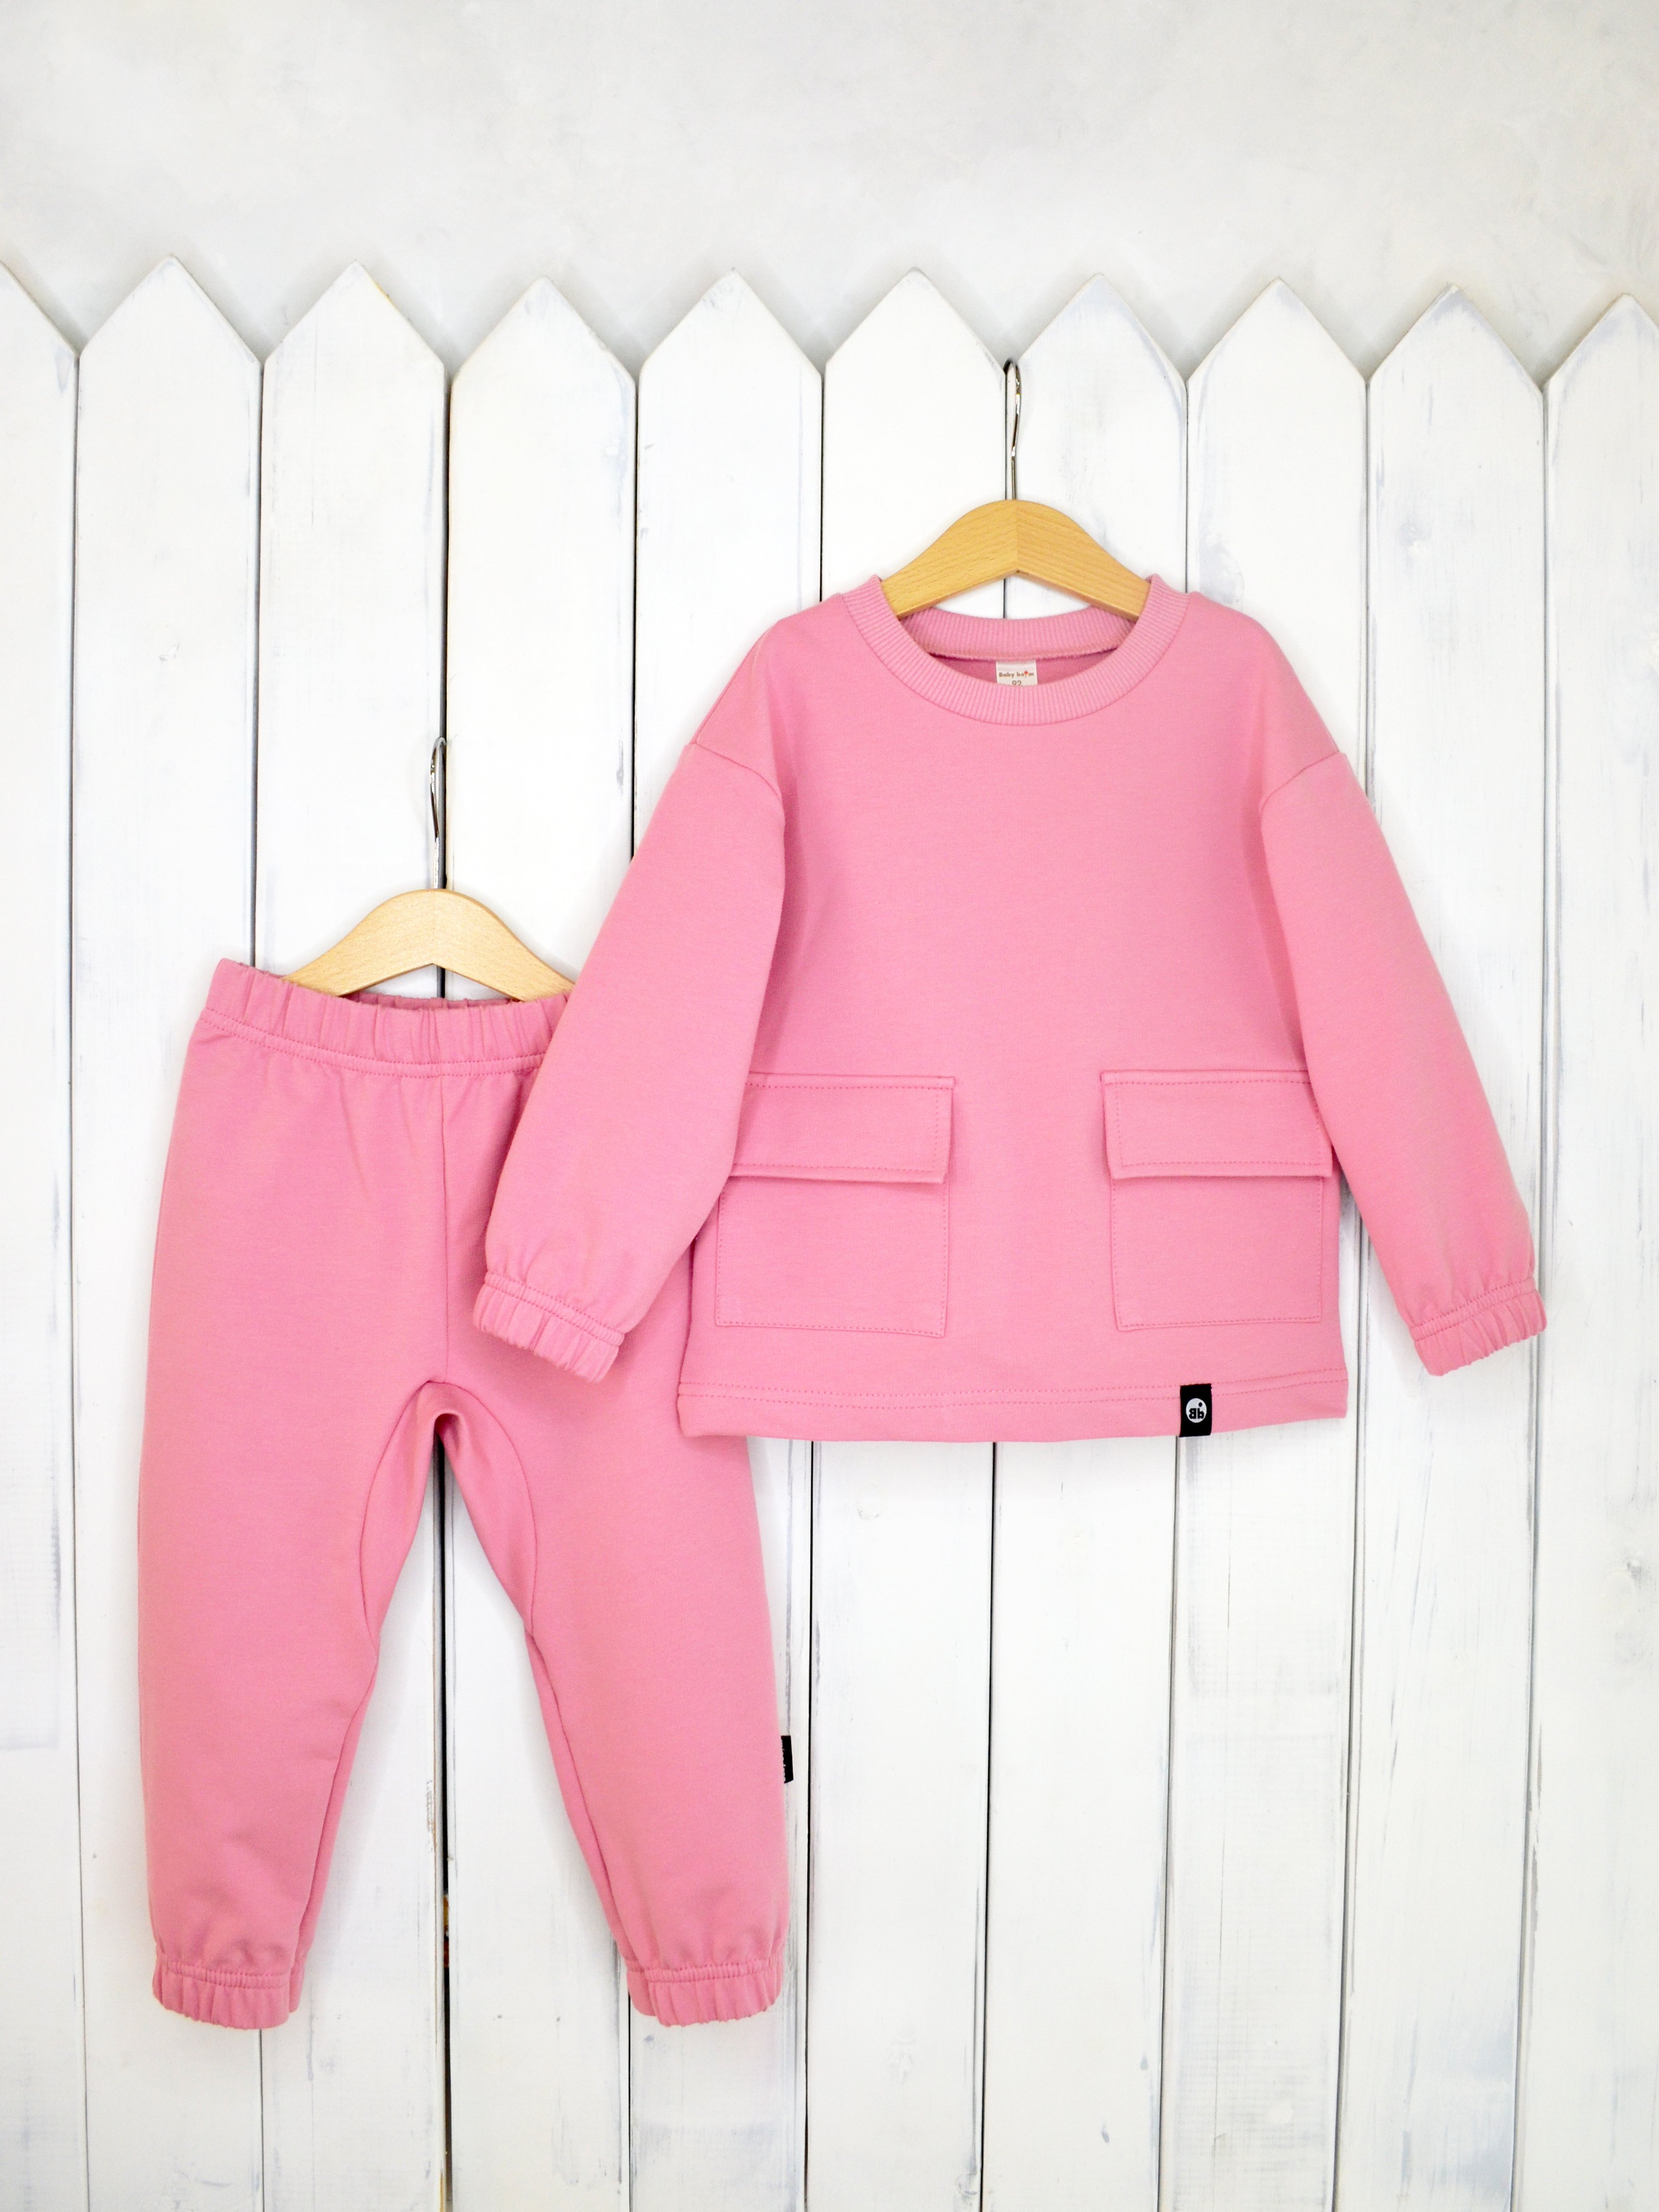 КД326/3-Ф Комплект детский джемпер+брюки цвет: розовый зефир р.116 Бэби Бум - Санкт-Петербург 